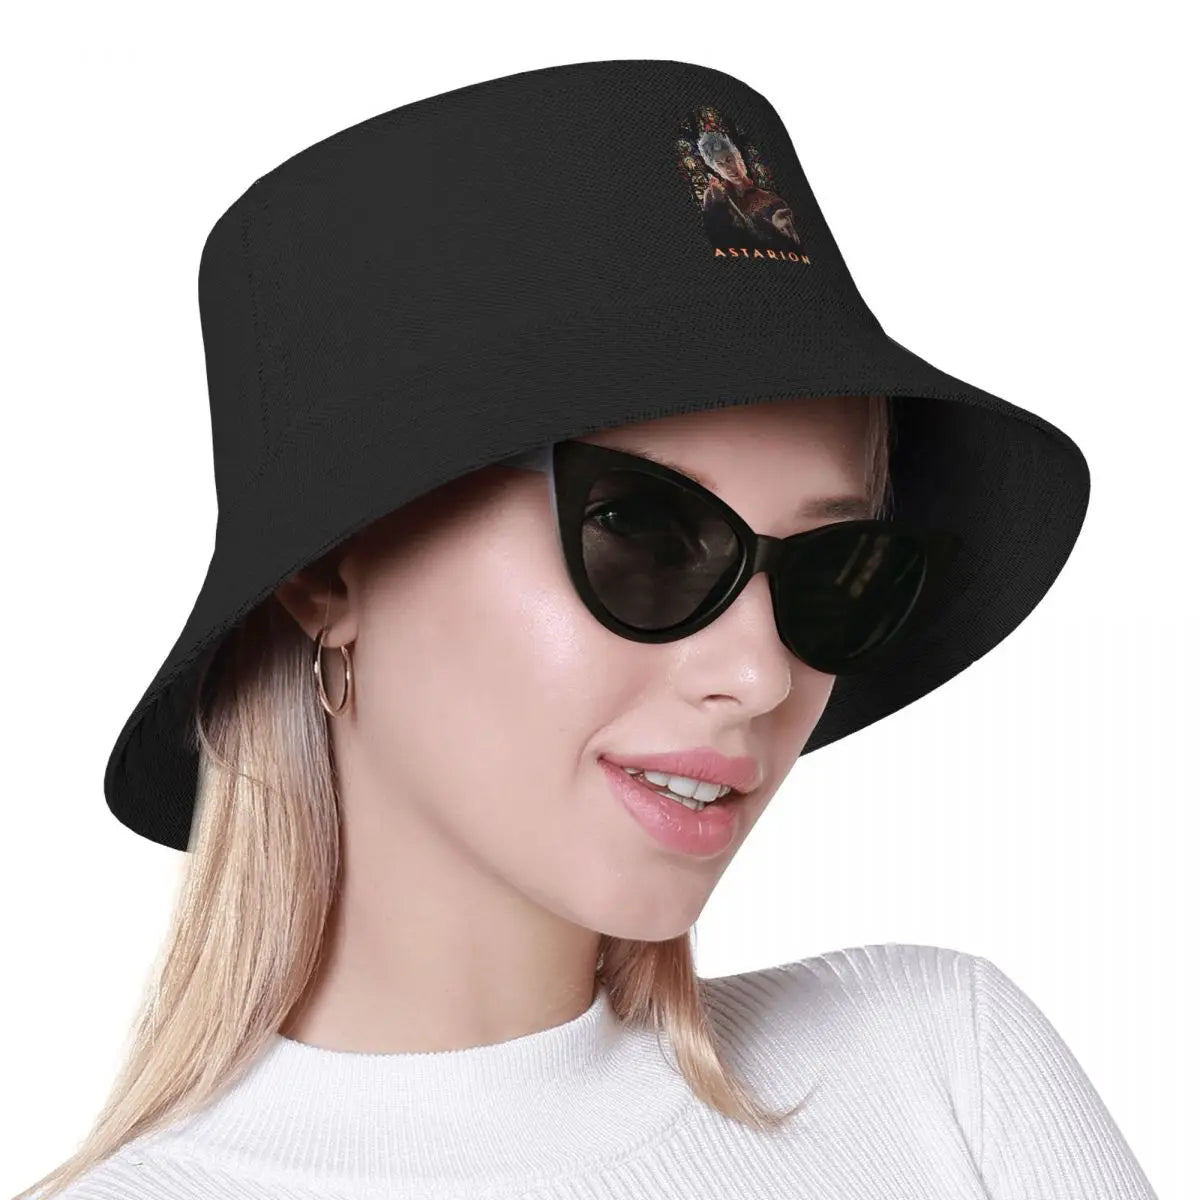 Astarion Baldur's Gate Game seau chapeaux printemps chapeaux accessoires pêcheur chapeaux pour randonnée femmes Panama chapeau Protection UV